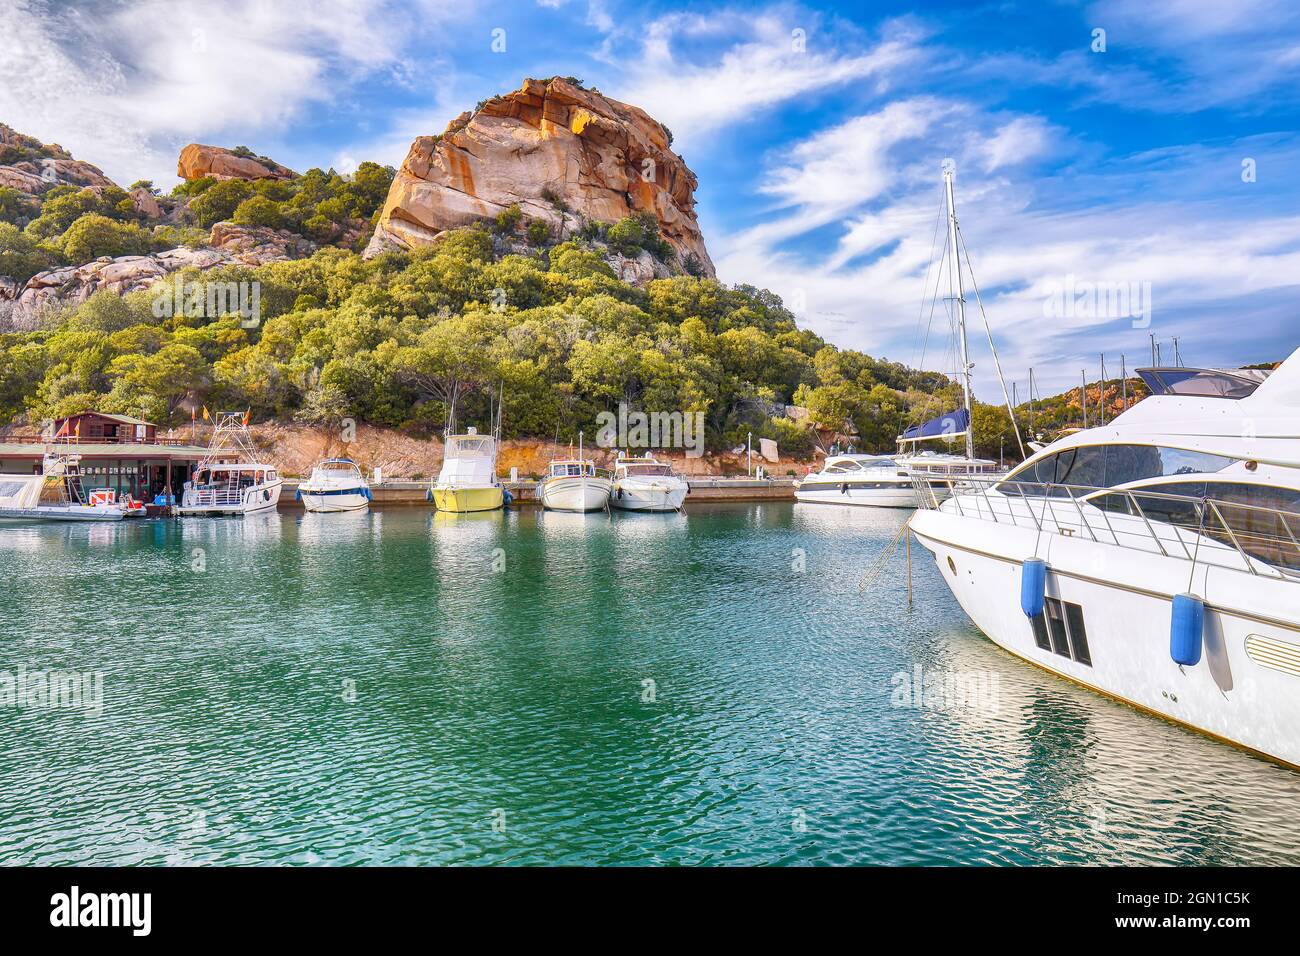 Zauberhafter Blick auf den Hafen und die Bucht von Poltu Quatu mit Luxusyachten an der Costa Smeralda. Beliebtes Reiseziel des Mittelmeers. Lage: Poltu Qua Stockfoto